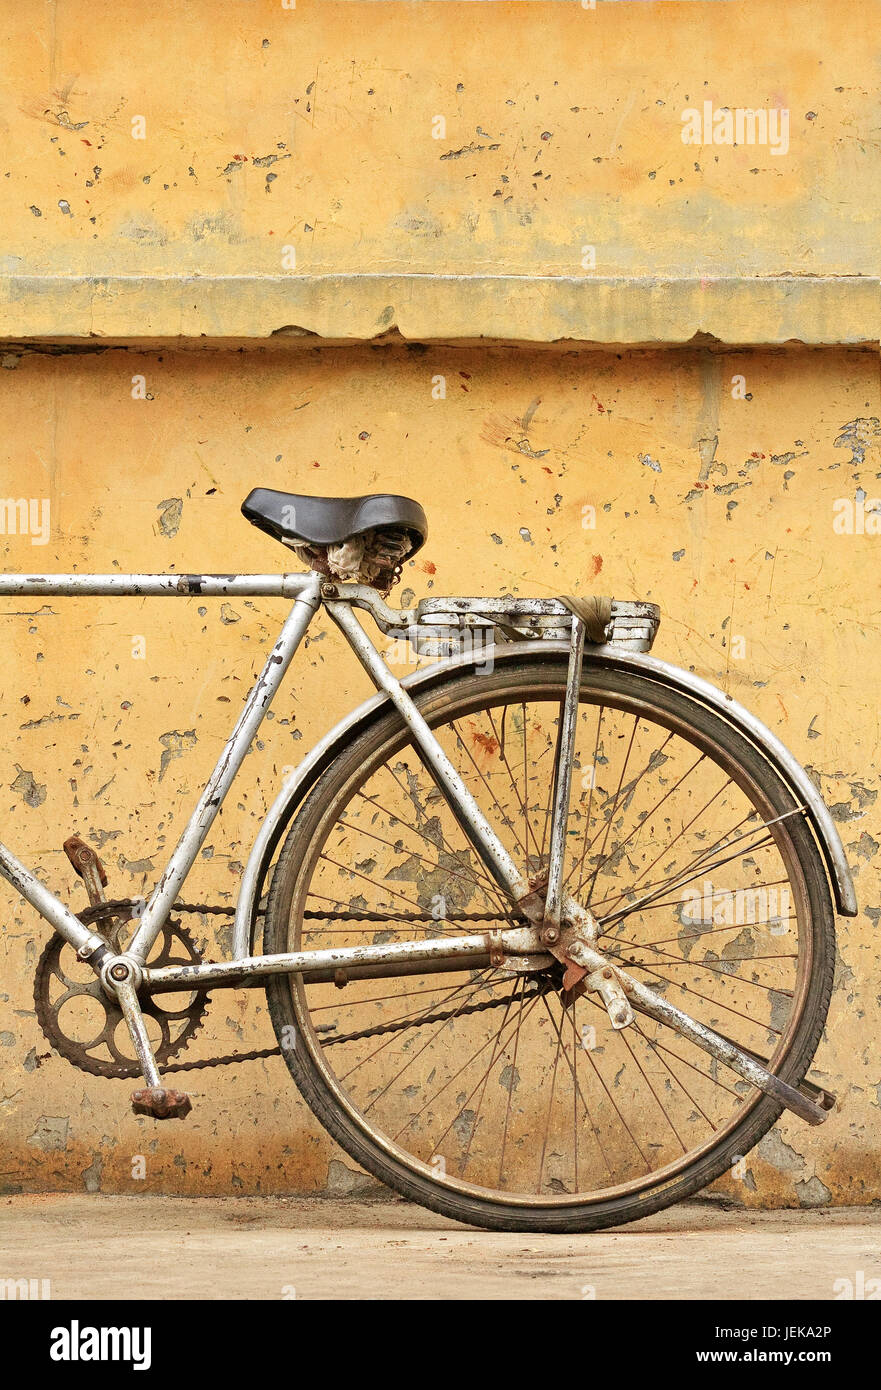 Cadena de bicicleta oxidada fotografías e imágenes de alta resolución -  Página 9 - Alamy